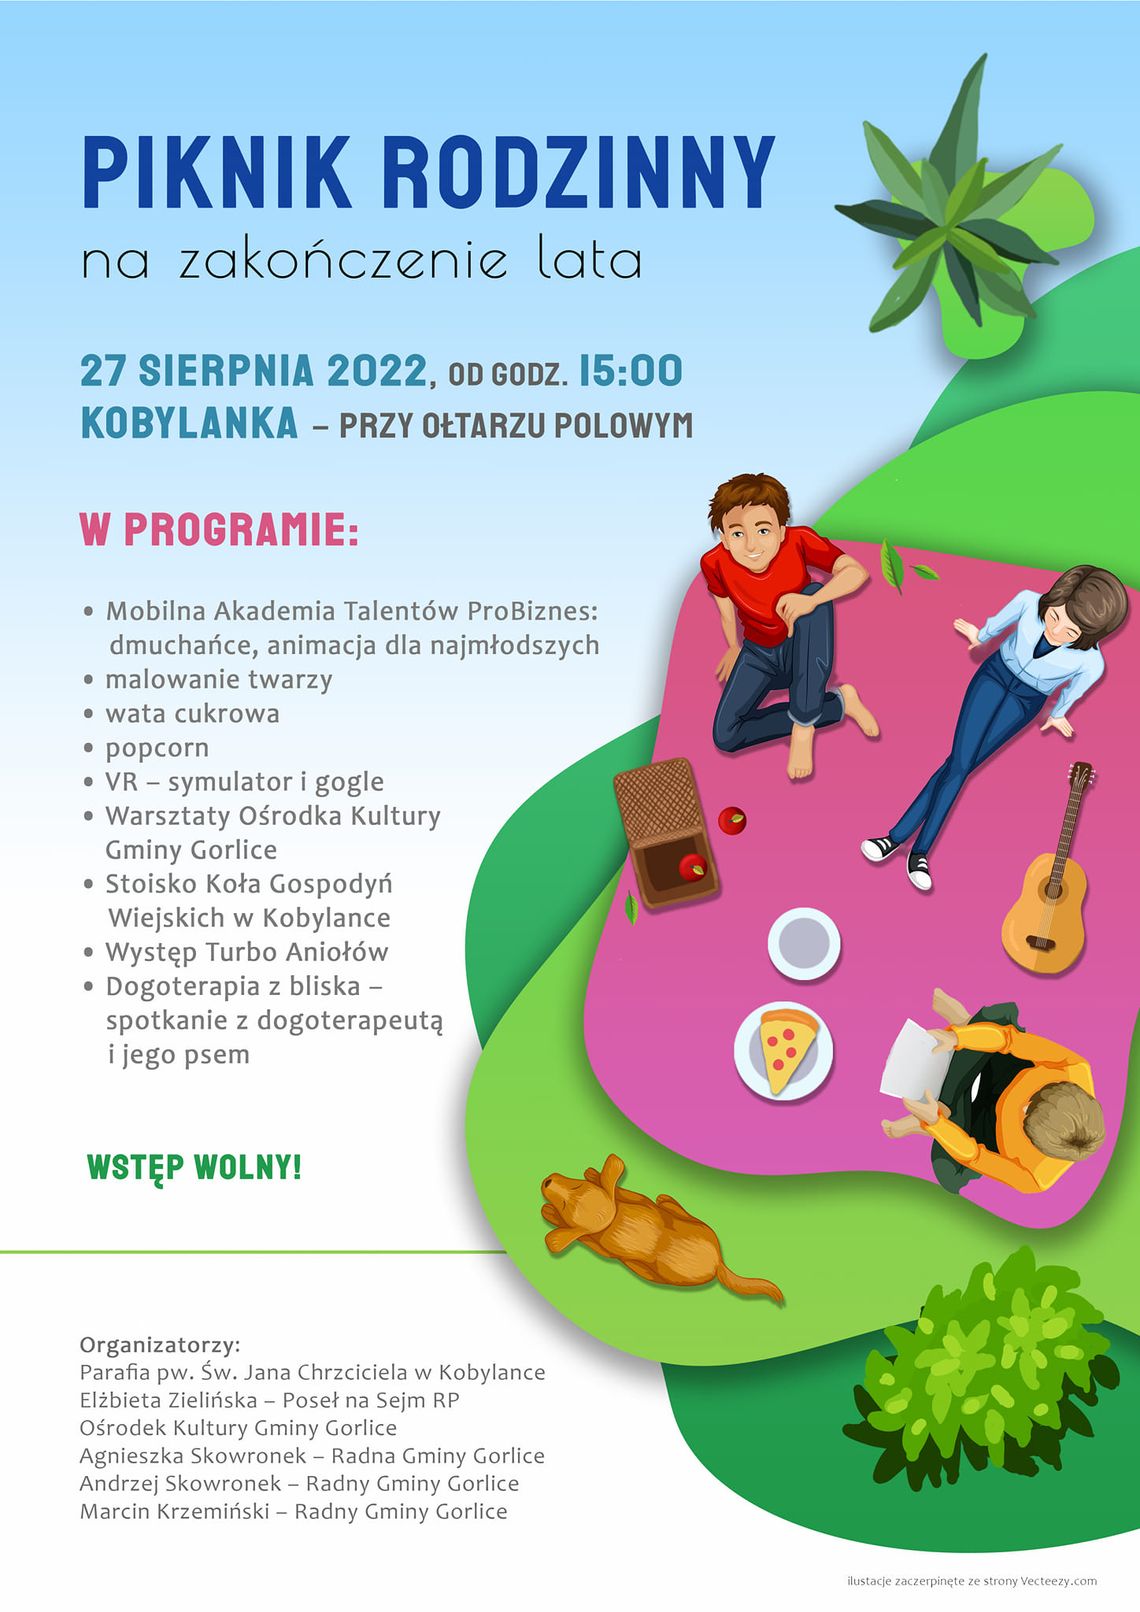 Piknik Rodzinny na zakończenie lata – Kobylanka | zapowiedzi imprez – halogorlice.info